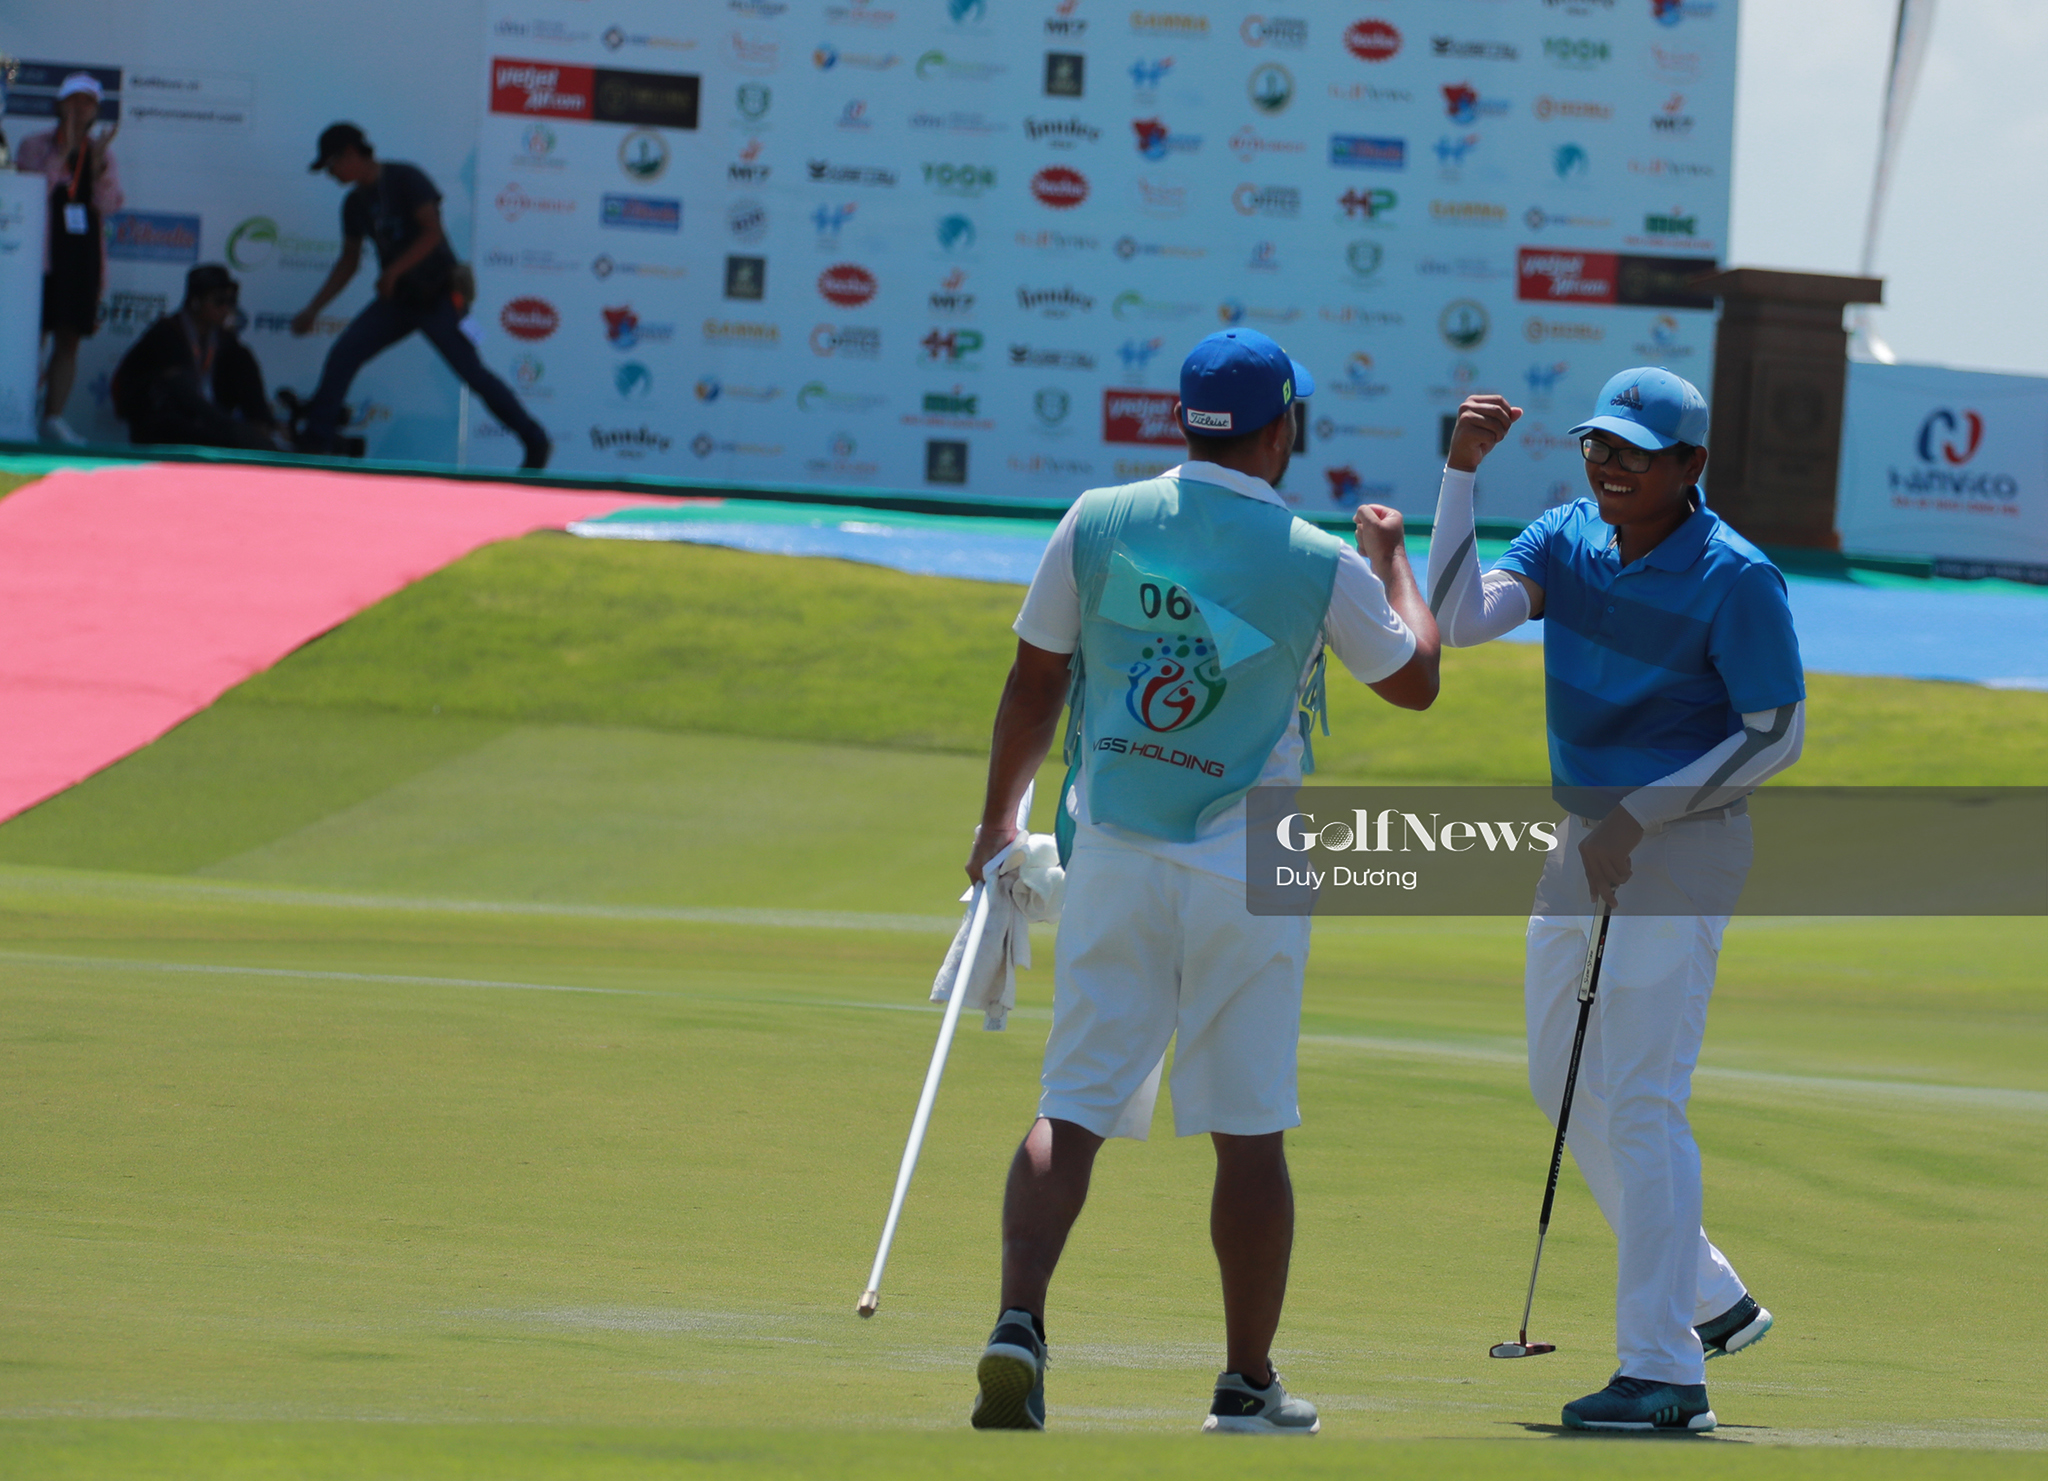 VAO 2020 “nóng” với sự góp mặt của nhiều golfer tài năng